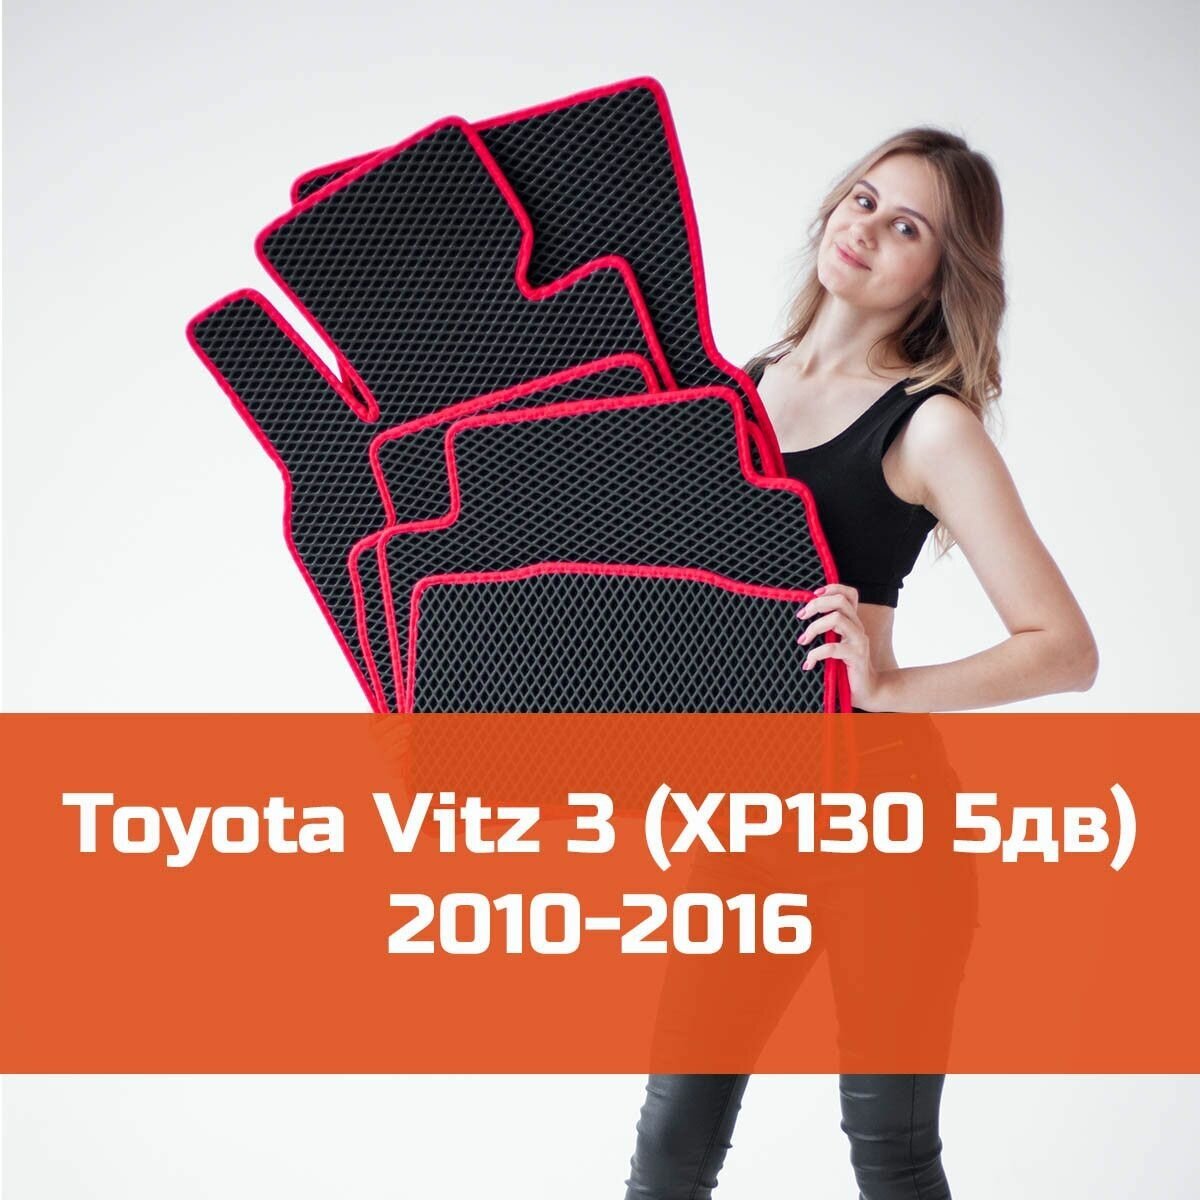 Коврики EVA на Toyota Vitz 3 (XP130 5дв) 2010-2016 Правый руль. Ева (Эва) автоковрики на Тойота (Тоета) Витц 3 Ромб Черный с красной окантовкой